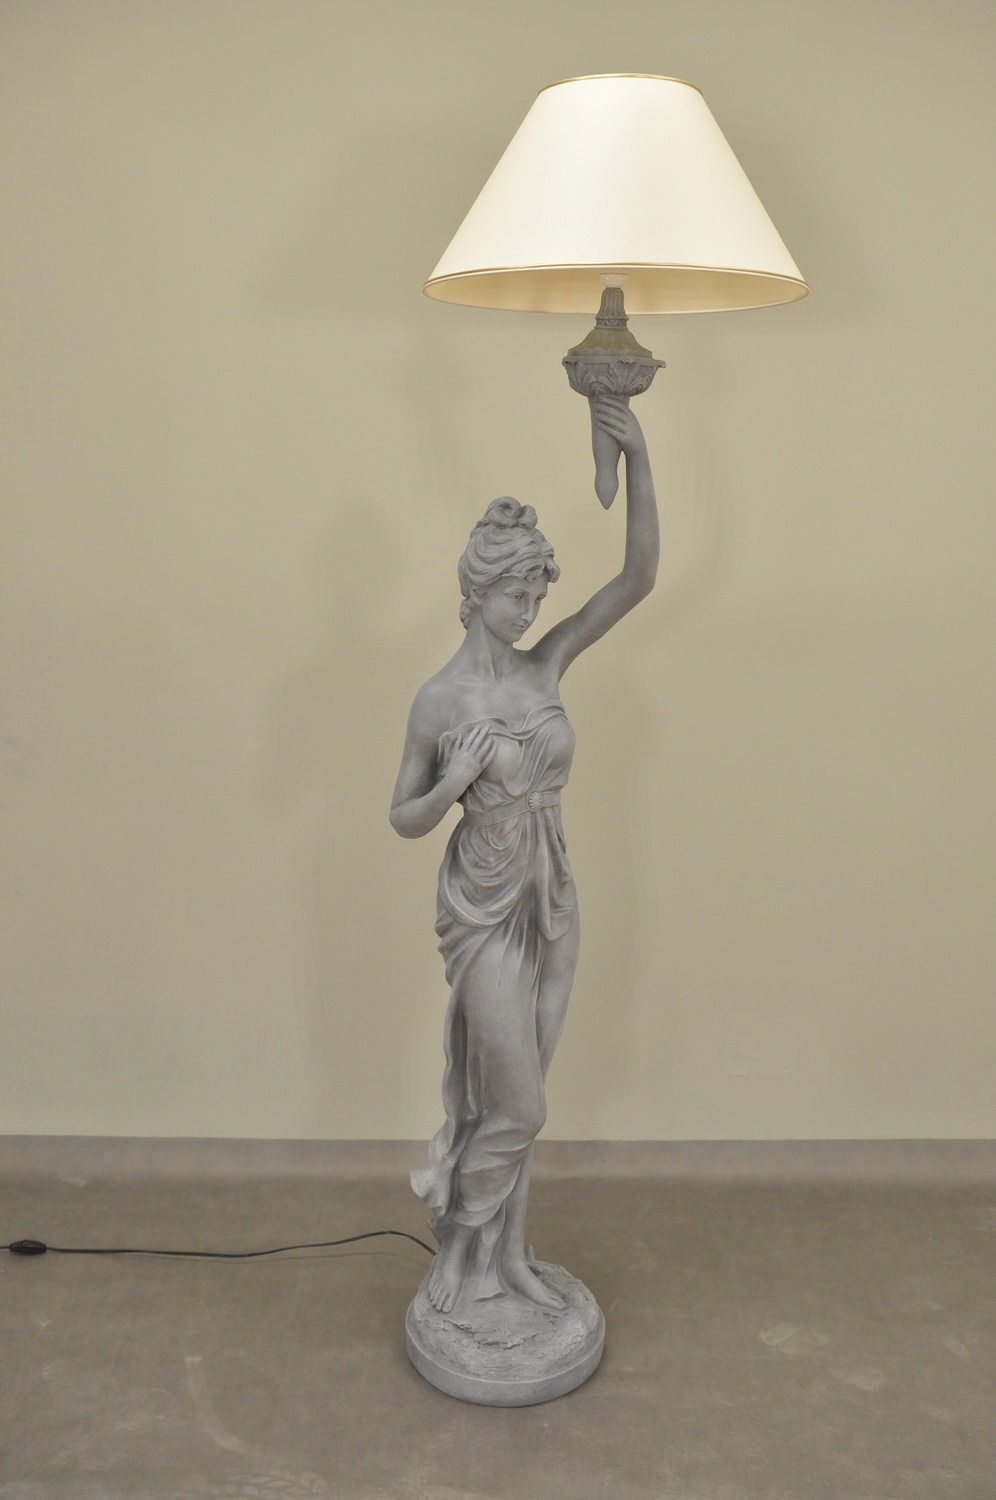 Lampa vysoká / Antický styl / 183cm - col.23 - šedý třený styl Zakázková výroba